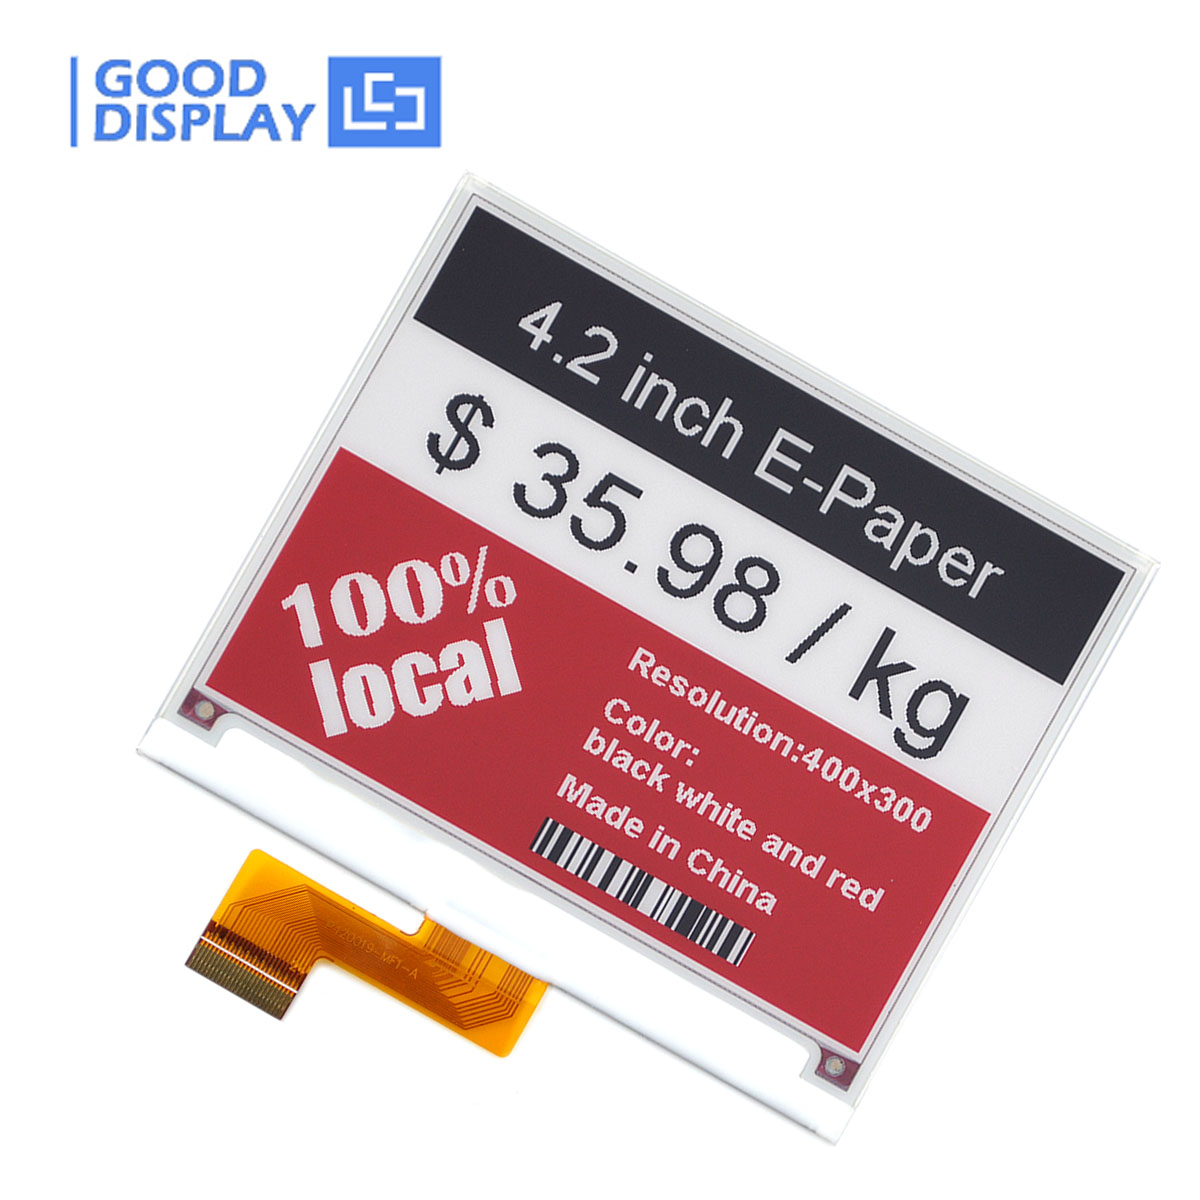 Preisschilder 4,2 zoll E-Paper-Anzeige 400*300 Auflösung geringer Stromverbrauch Good Display